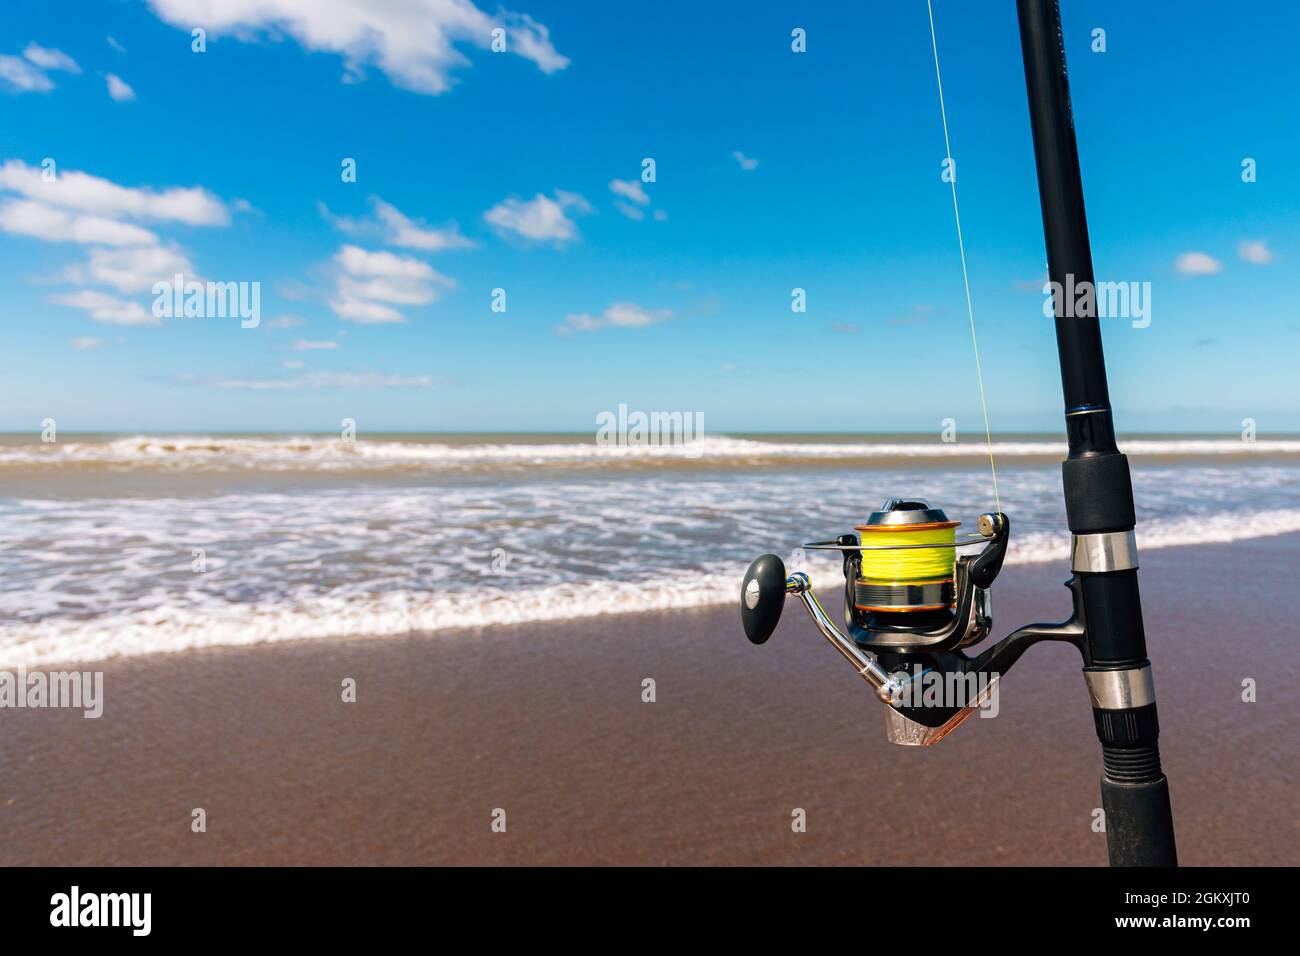 Gros plan de la canne à pêche sur sa canne à pêche sur la plage par une belle journée ensoleillée. Photo horizontale. Banque D'Images